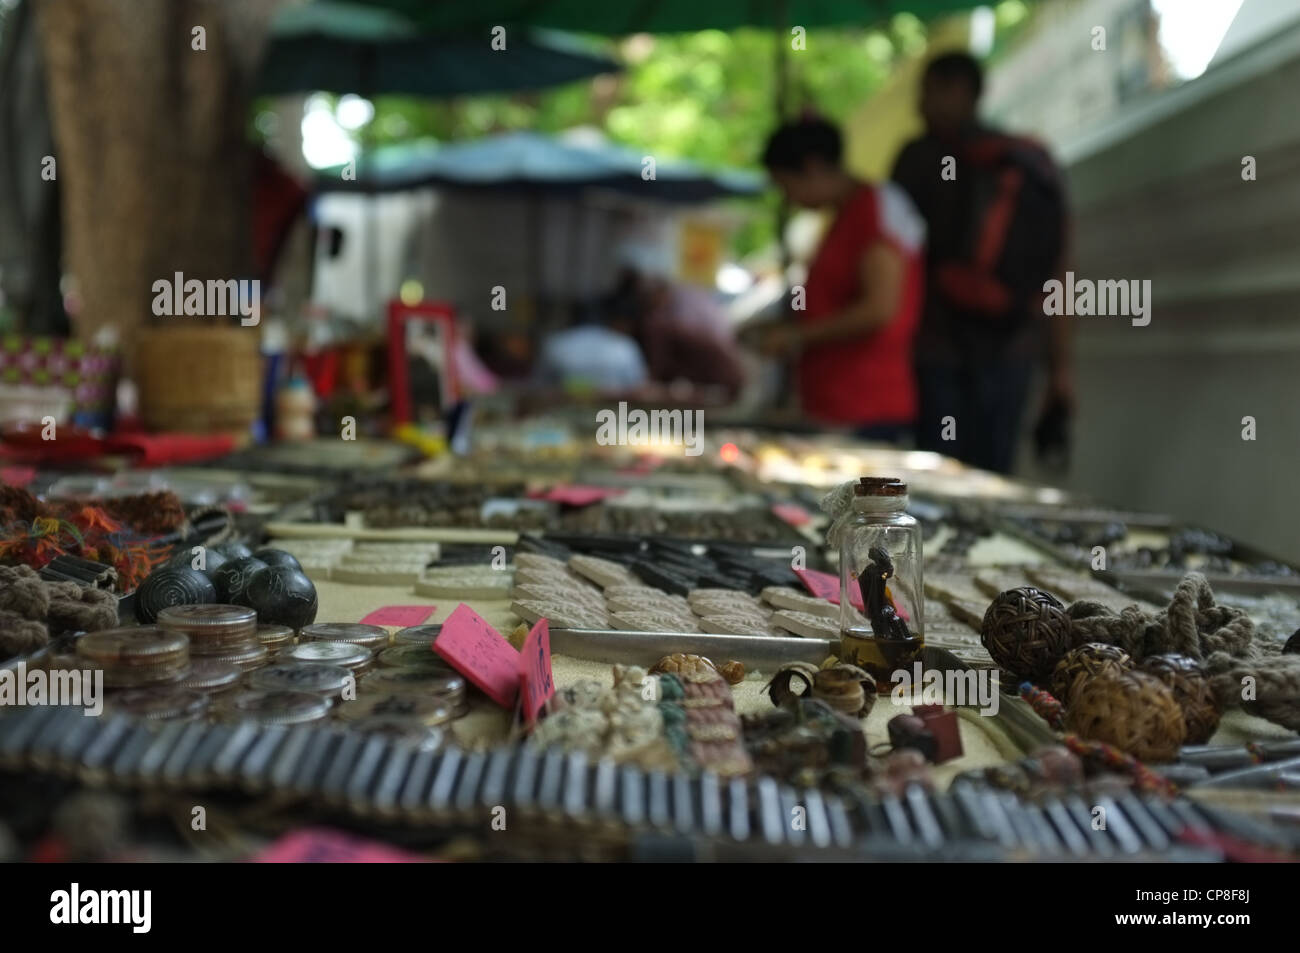 Une sélection de plats thaïlandais et de protection amulettes religieuses l'imagerie bouddhique en vente sur un marché à Bangkok près de Wat Mahathat temple. Banque D'Images